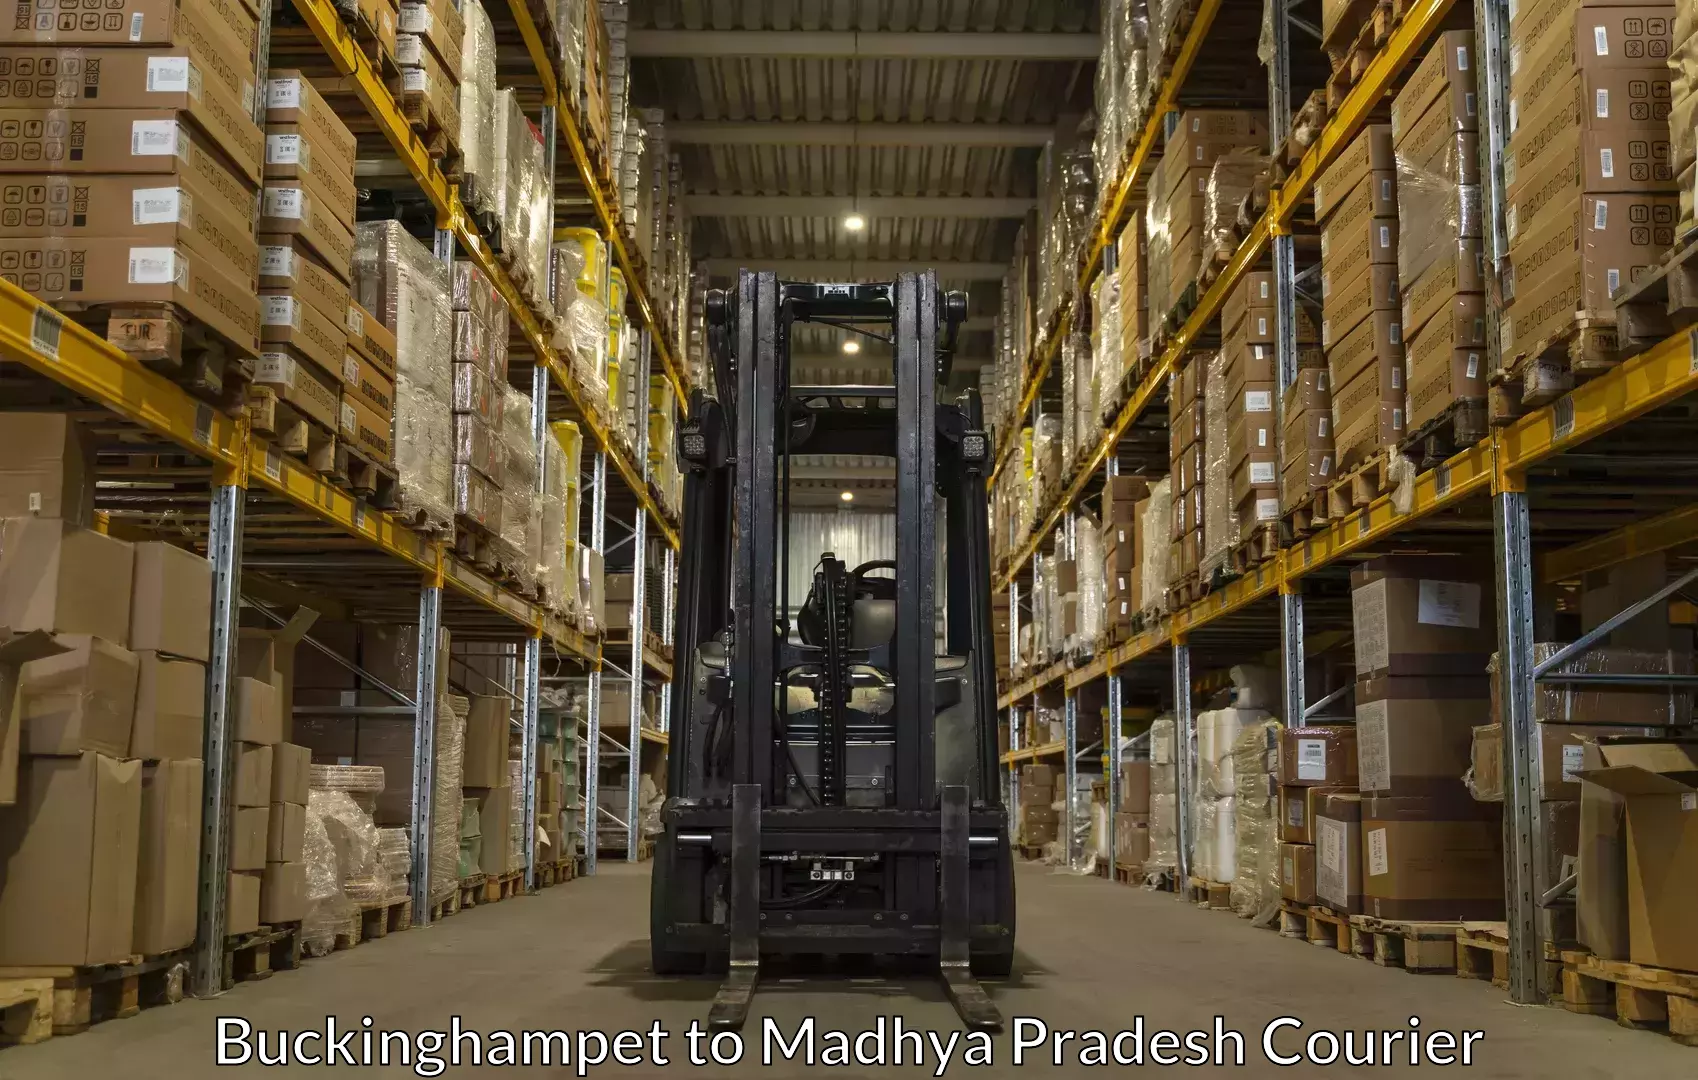 Furniture transport service in Buckinghampet to Madhya Pradesh